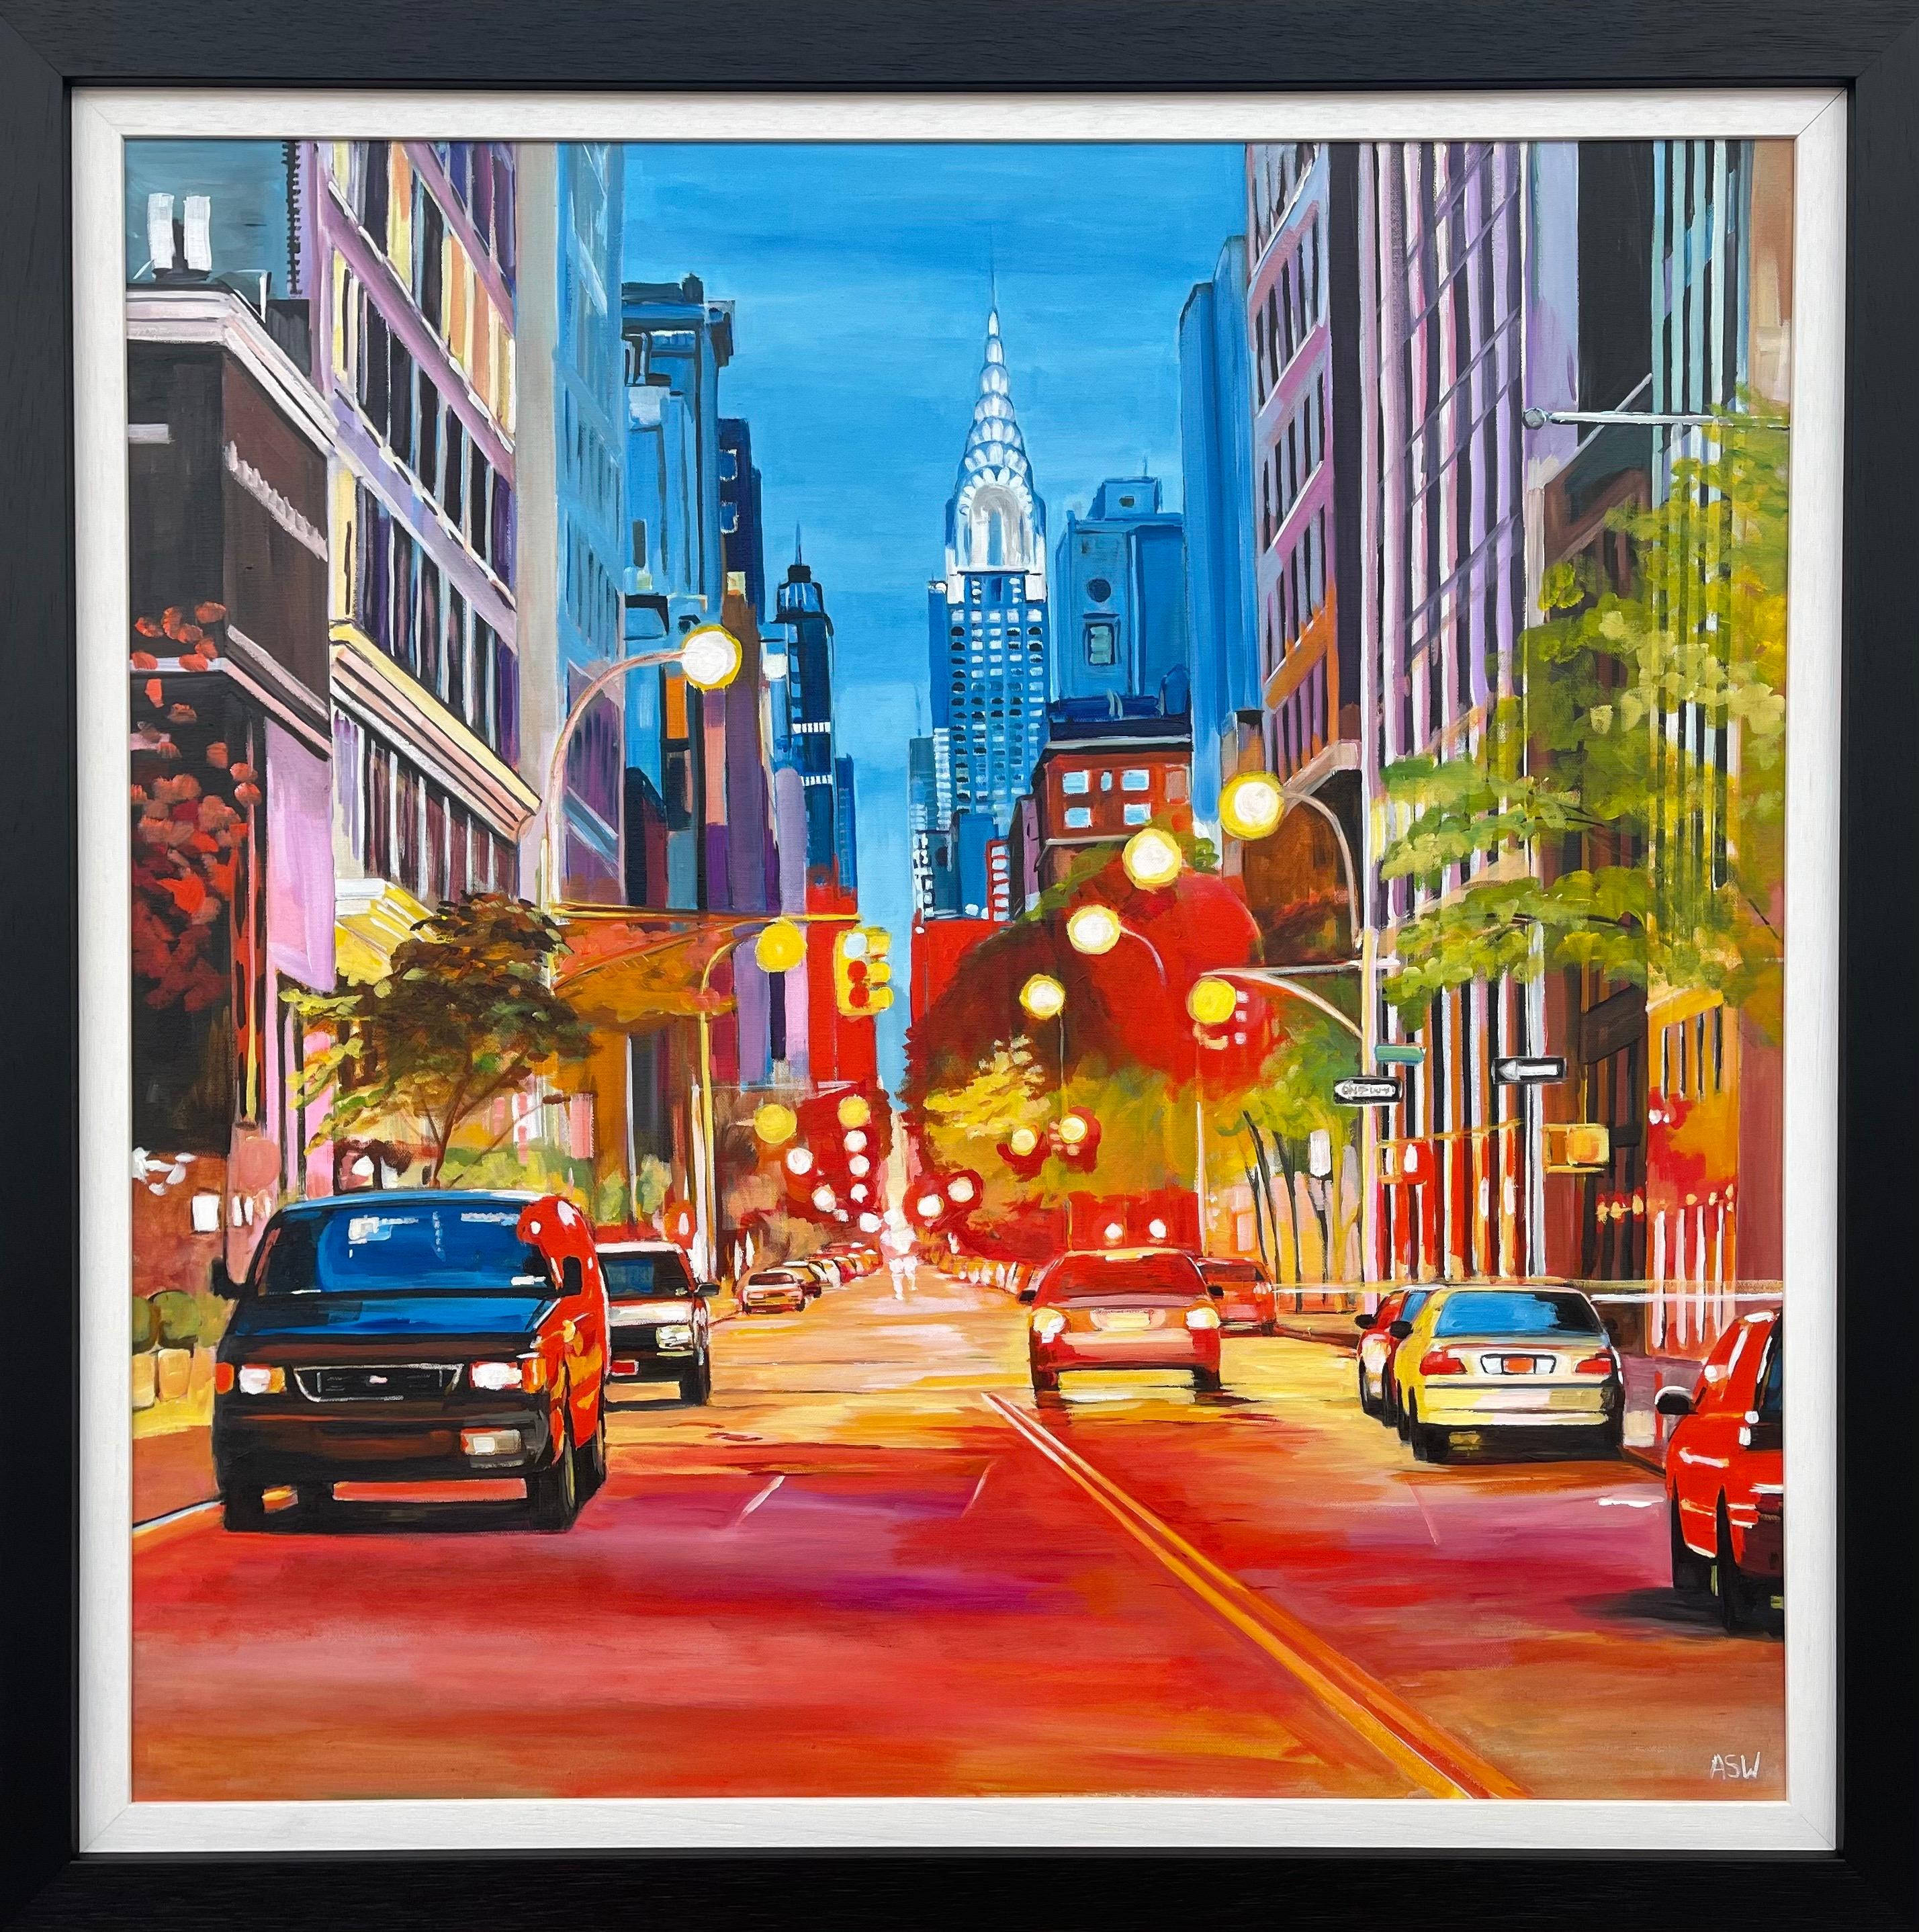 Angela Wakefield Landscape Painting – Gemälde des Chrysler-Gemäldes in New York City des zeitgenössischen britischen Künstlers